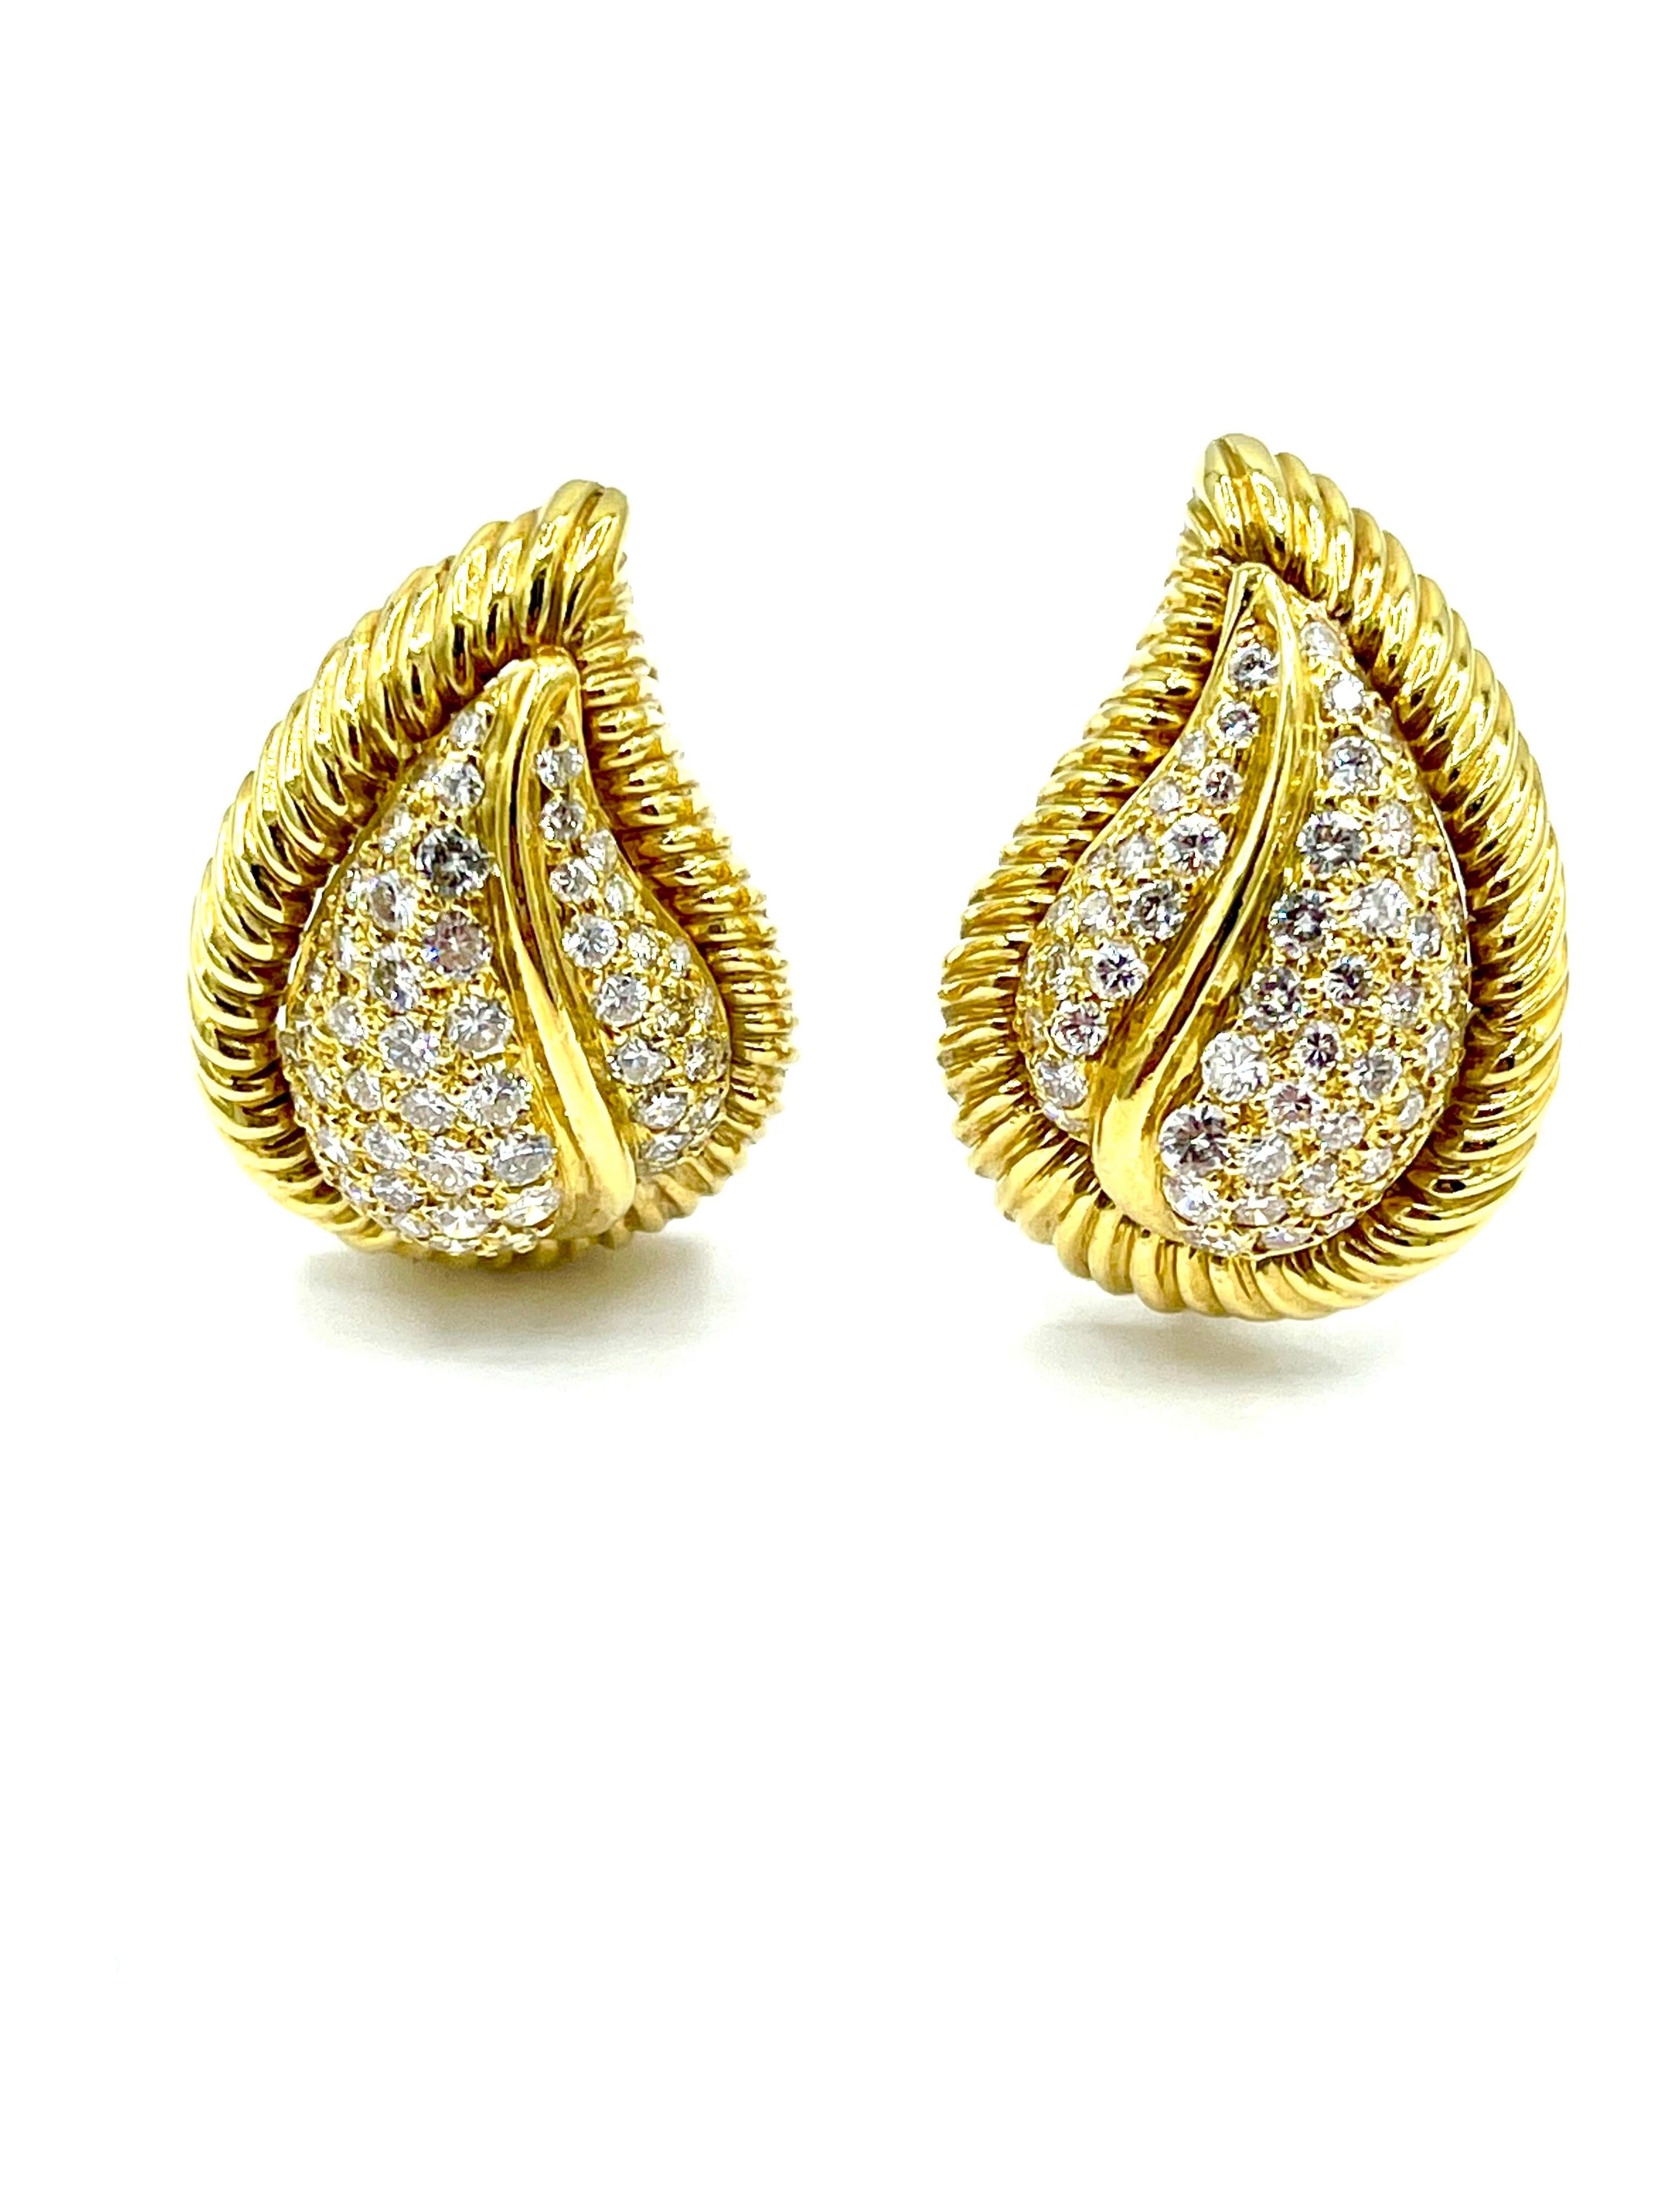 Ein schönes Paar von Pave Diamond und 18K Gelbgold Blatt Clip Ohrringe.  Insgesamt 114 runde Diamanten im Brillantschliff mit einem Gesamtgewicht von 2,50 Karat sind blattförmig mit einer strukturierten Goldumrandung gefasst.  Die Diamanten sind G